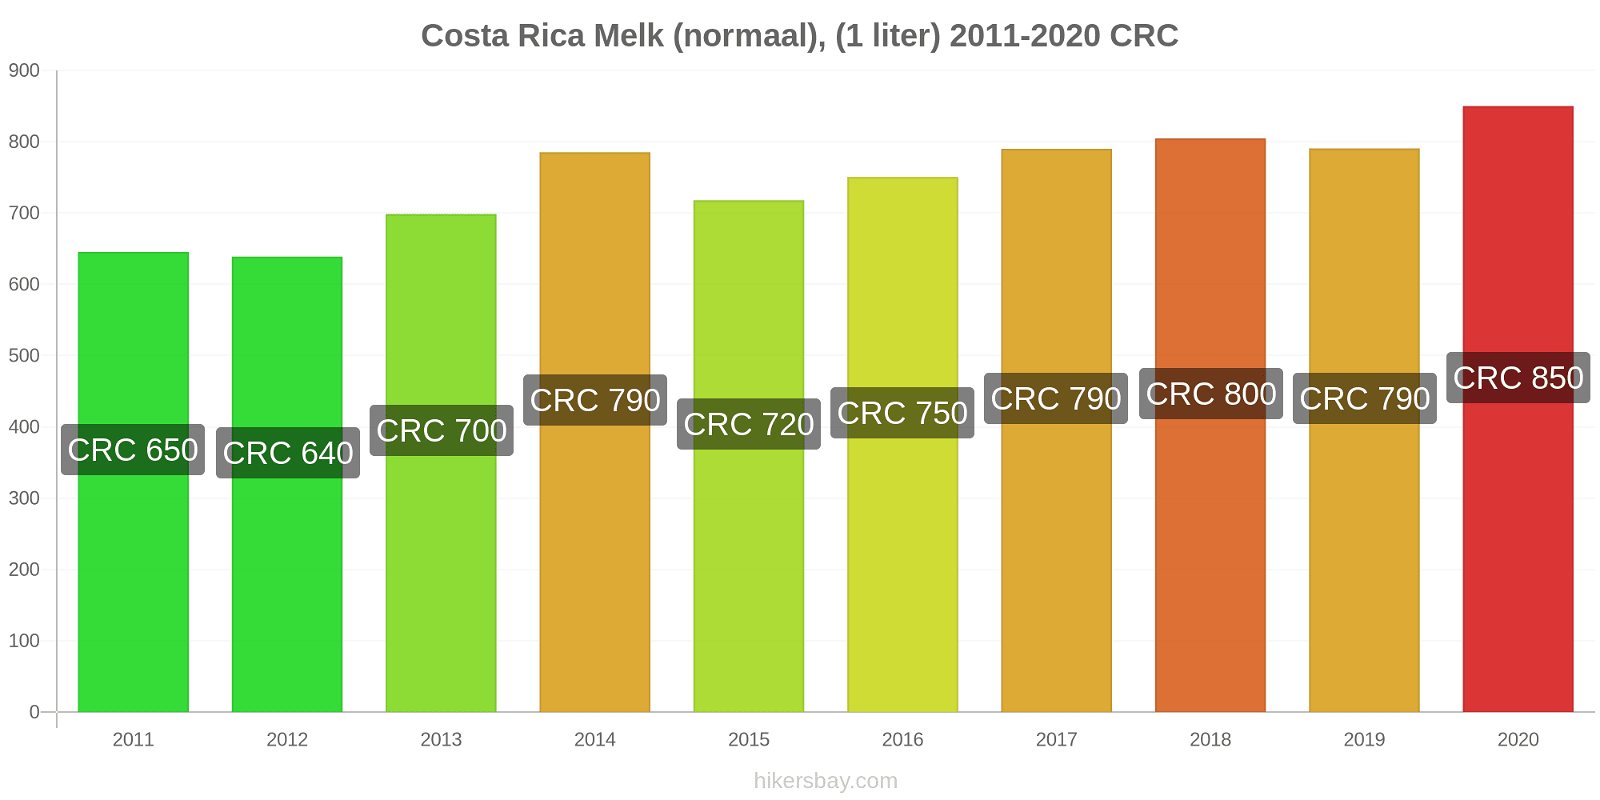 Costa Rica prijswijzigingen Melk (regelmatige), (1 liter) hikersbay.com